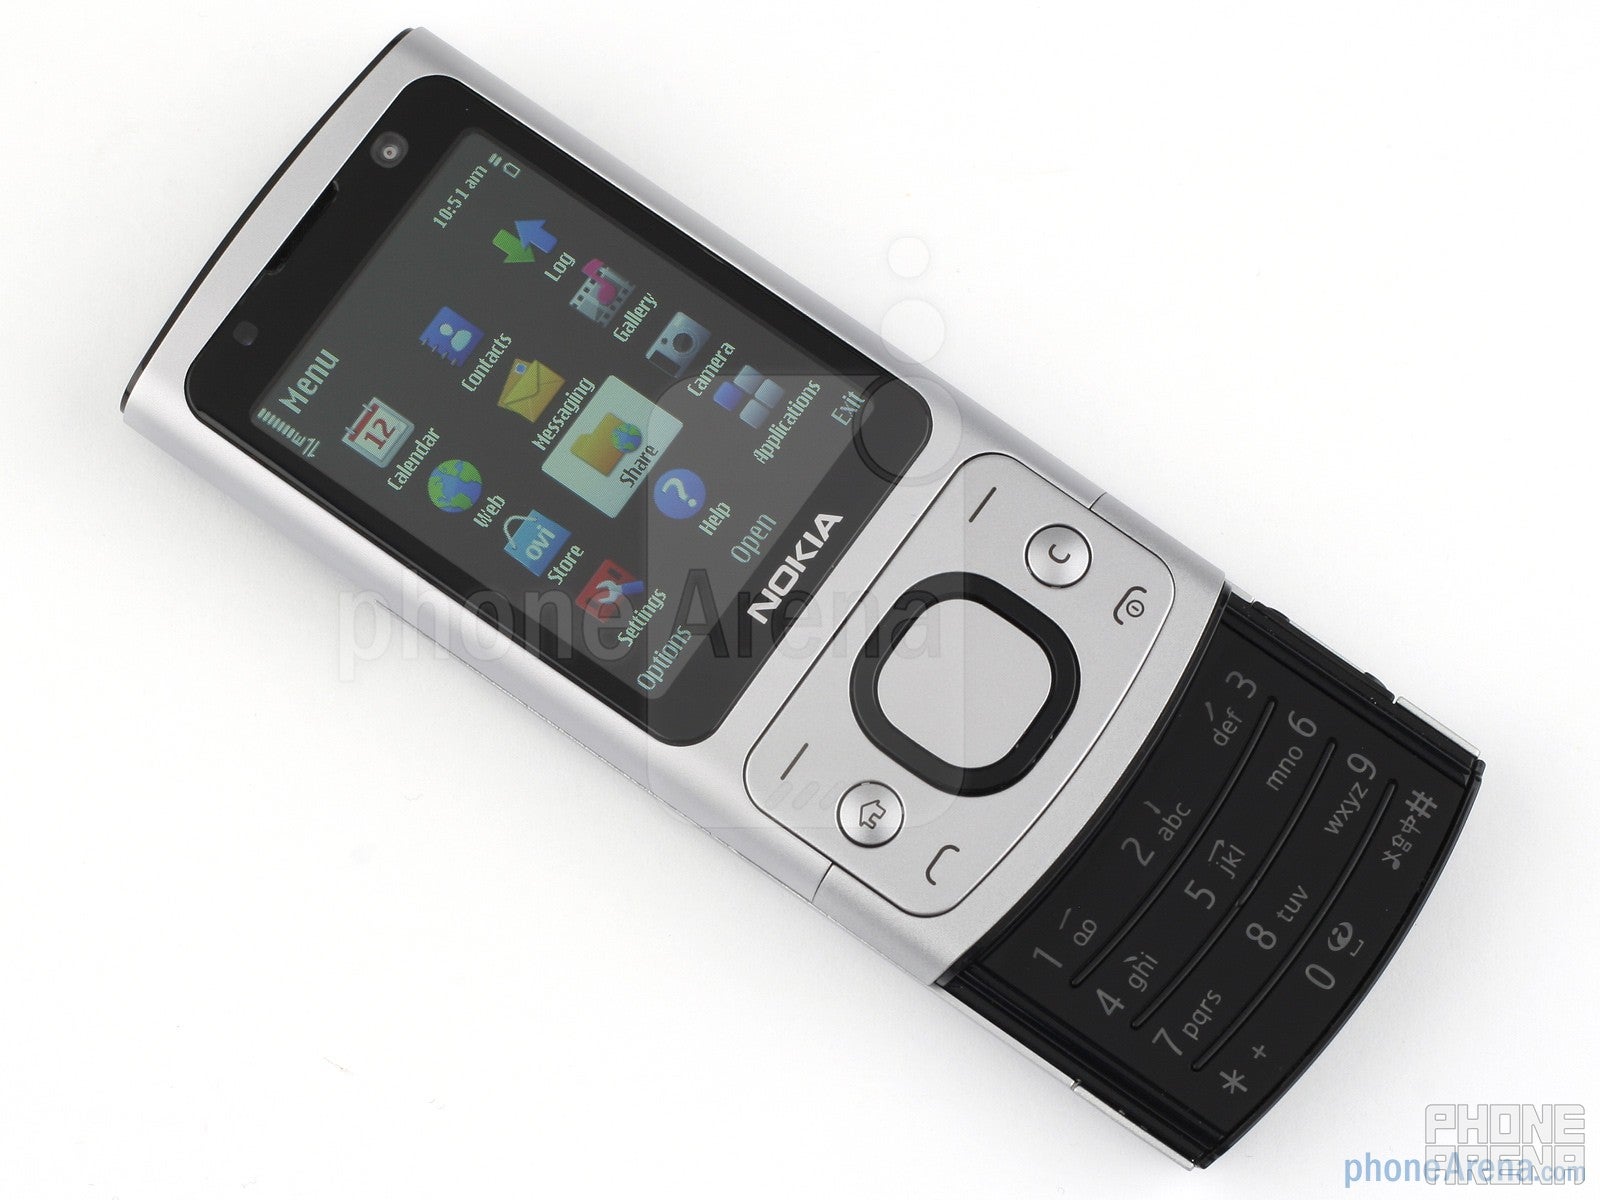 Nokia 6700 slide Review